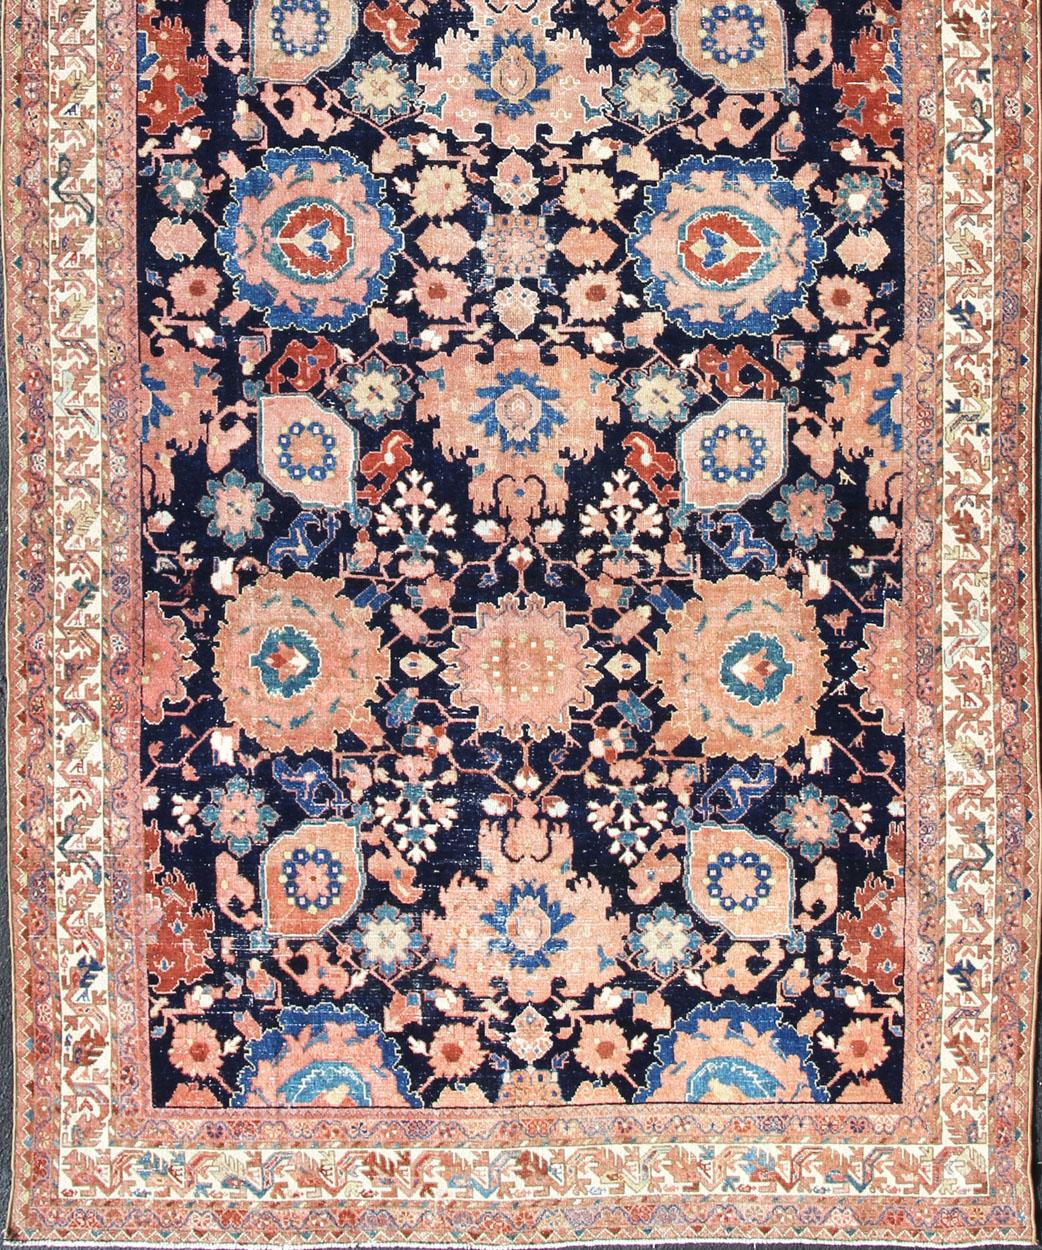 Persischer Malayer in Marineblau und Pfirsich mit Allover-Muster. Rug/R20-107
Dieser antike persische Malayer-Teppich hat ein traditionelles Muster mit Proportionen, Farben und Motiven, die einzigartig für den westlichen Geschmack und die westliche